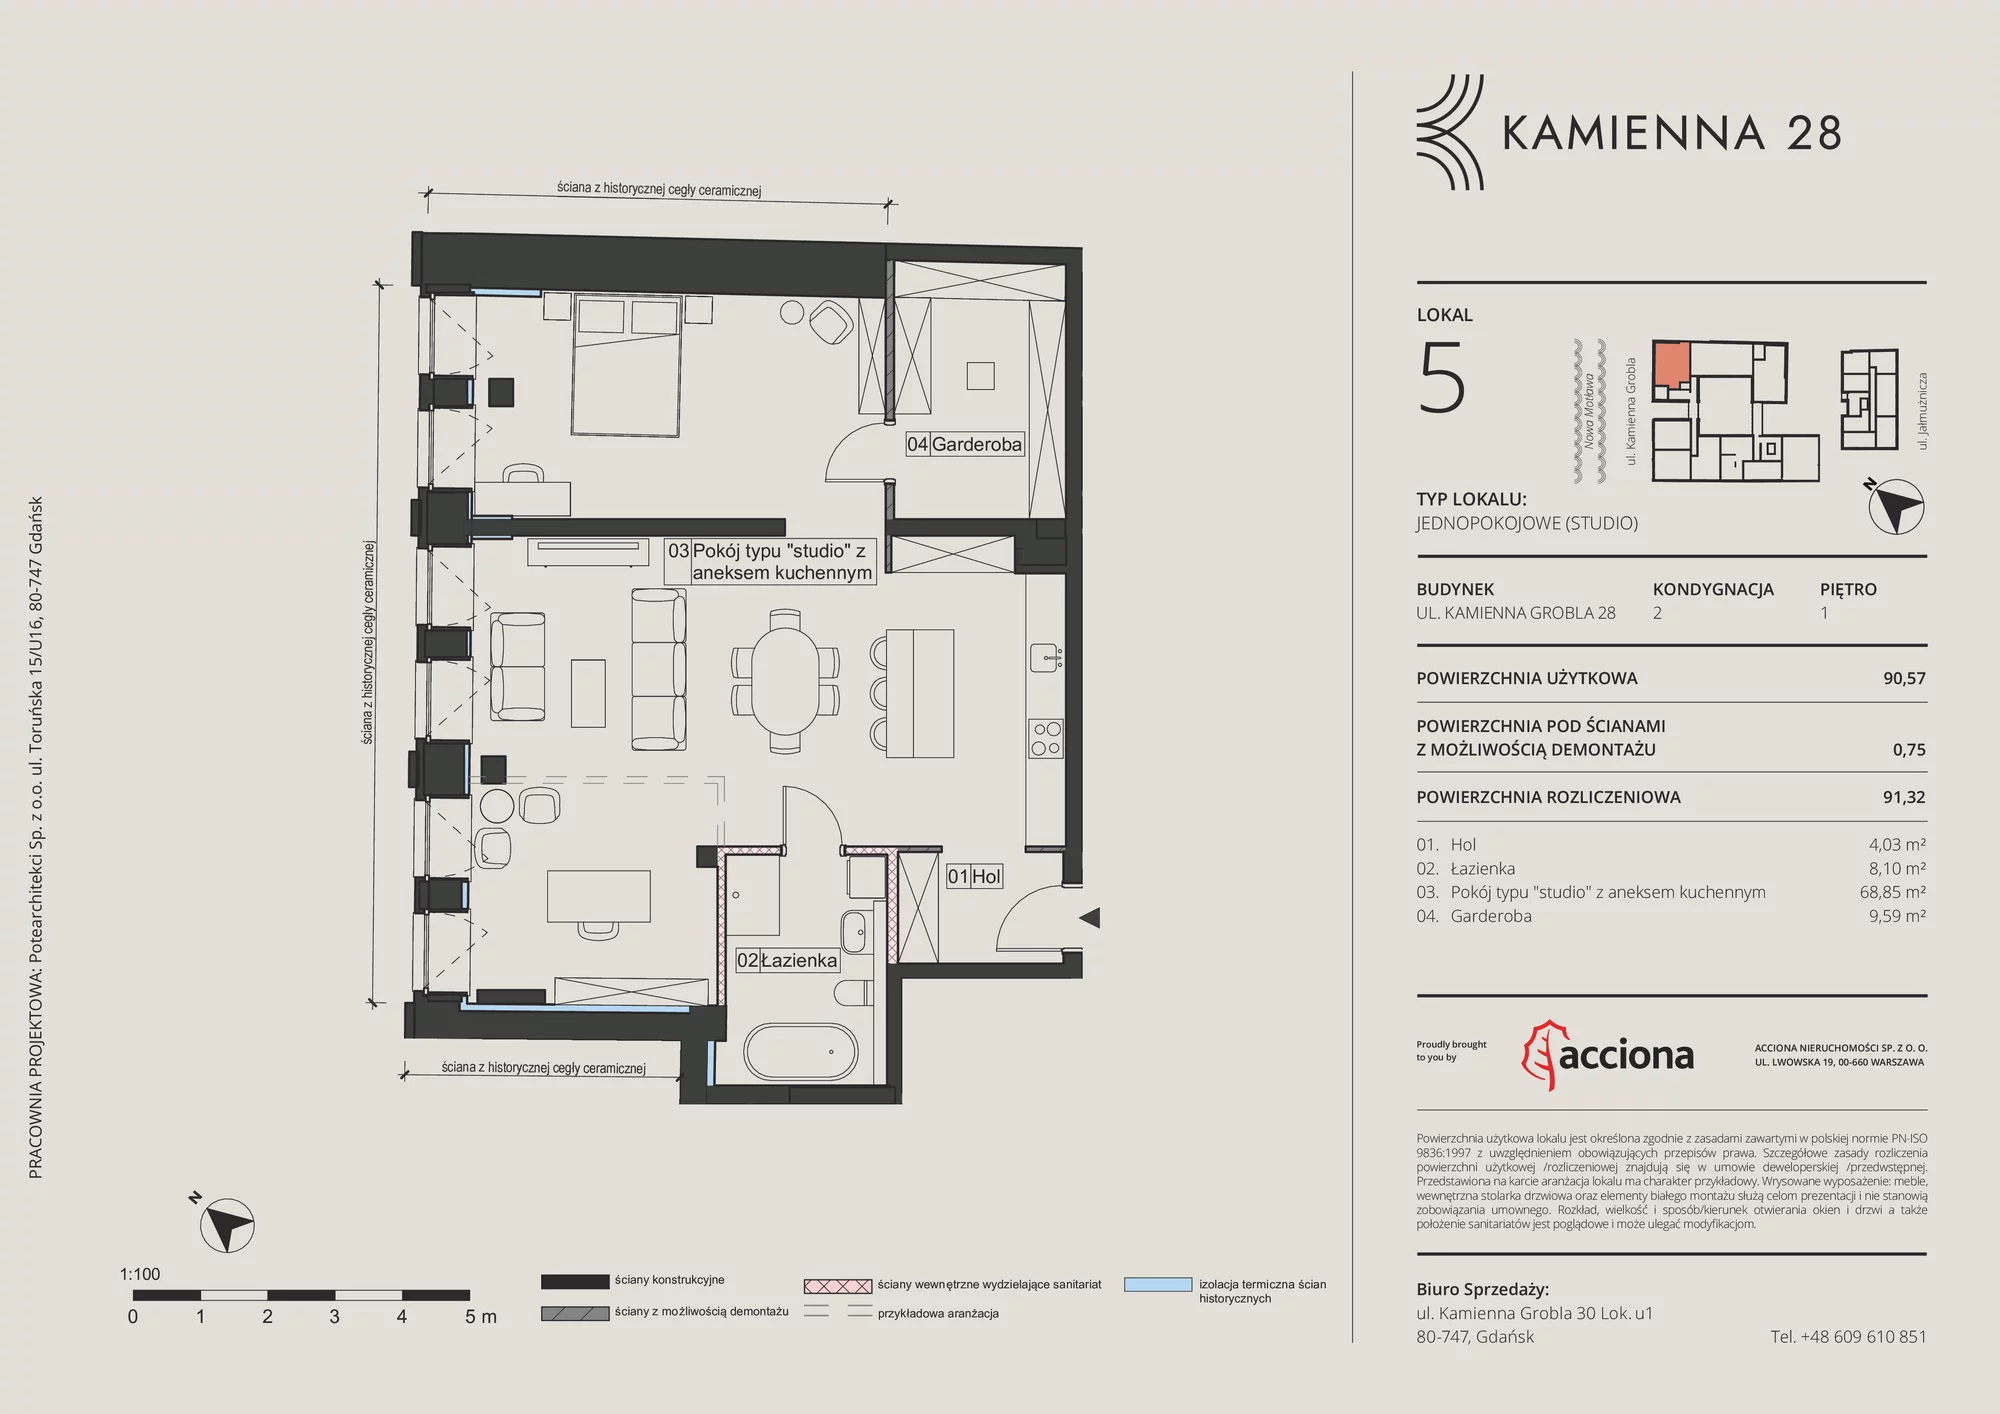 Apartament 91,32 m², piętro 1, oferta nr 28.5, Kamienna 28, Gdańsk, Śródmieście, Dolne Miasto, ul. Kamienna Grobla 28/29